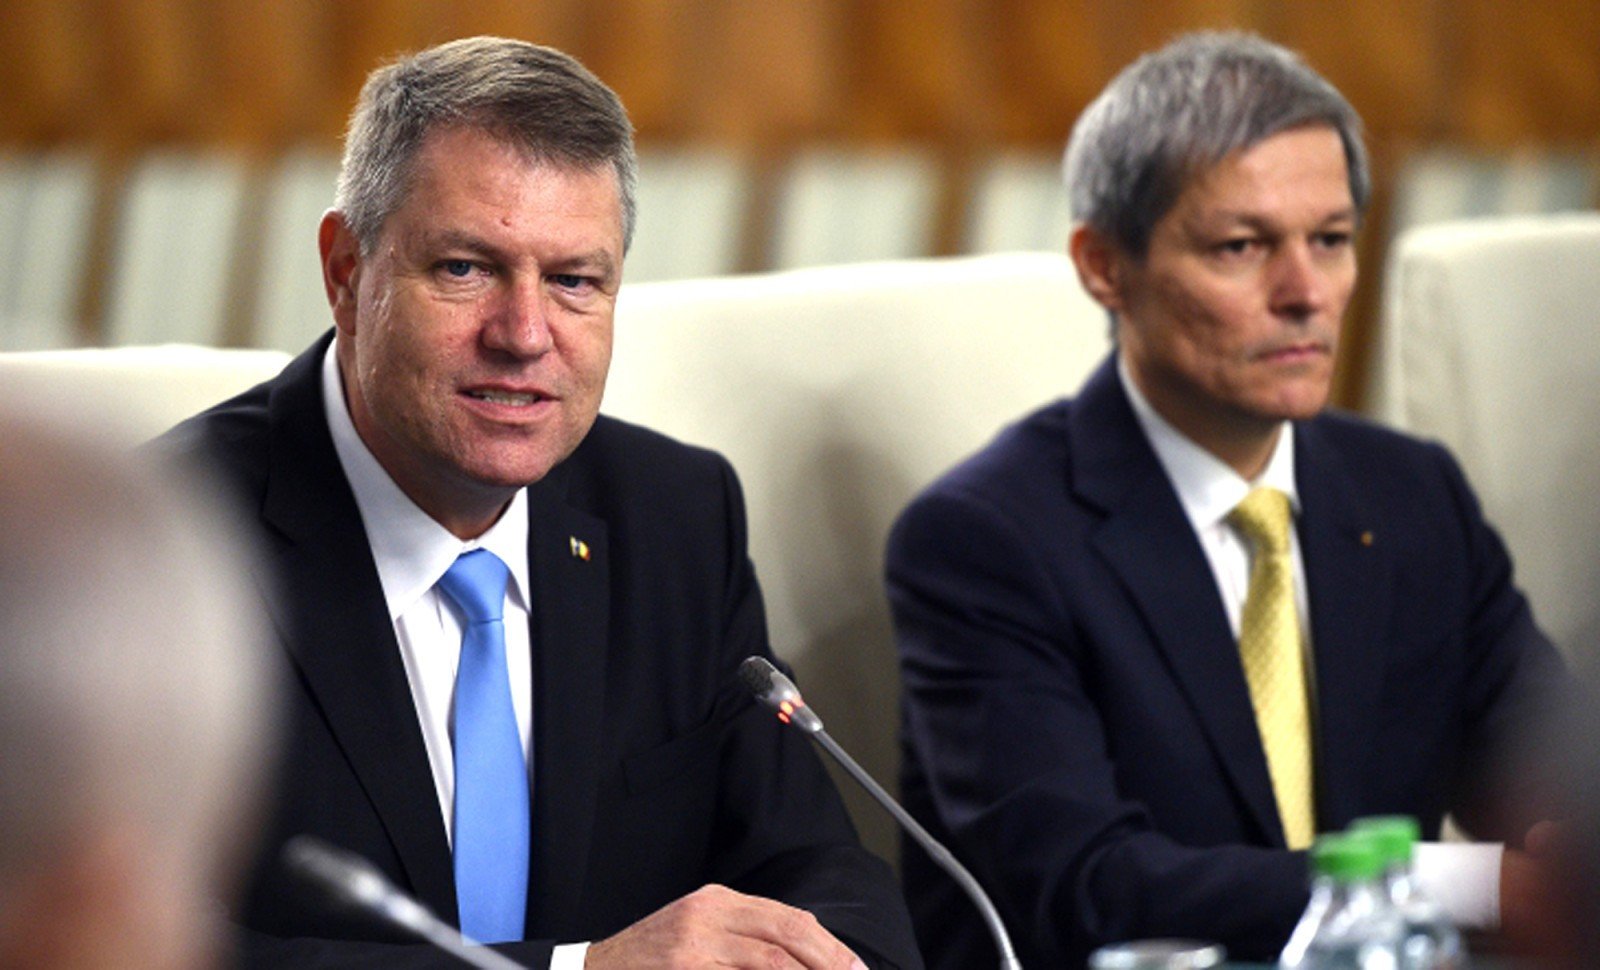  Iohannis, ironii la adresa lui Cioloș: A sunat un clopoțel în Parlament și acum ne dă lecții